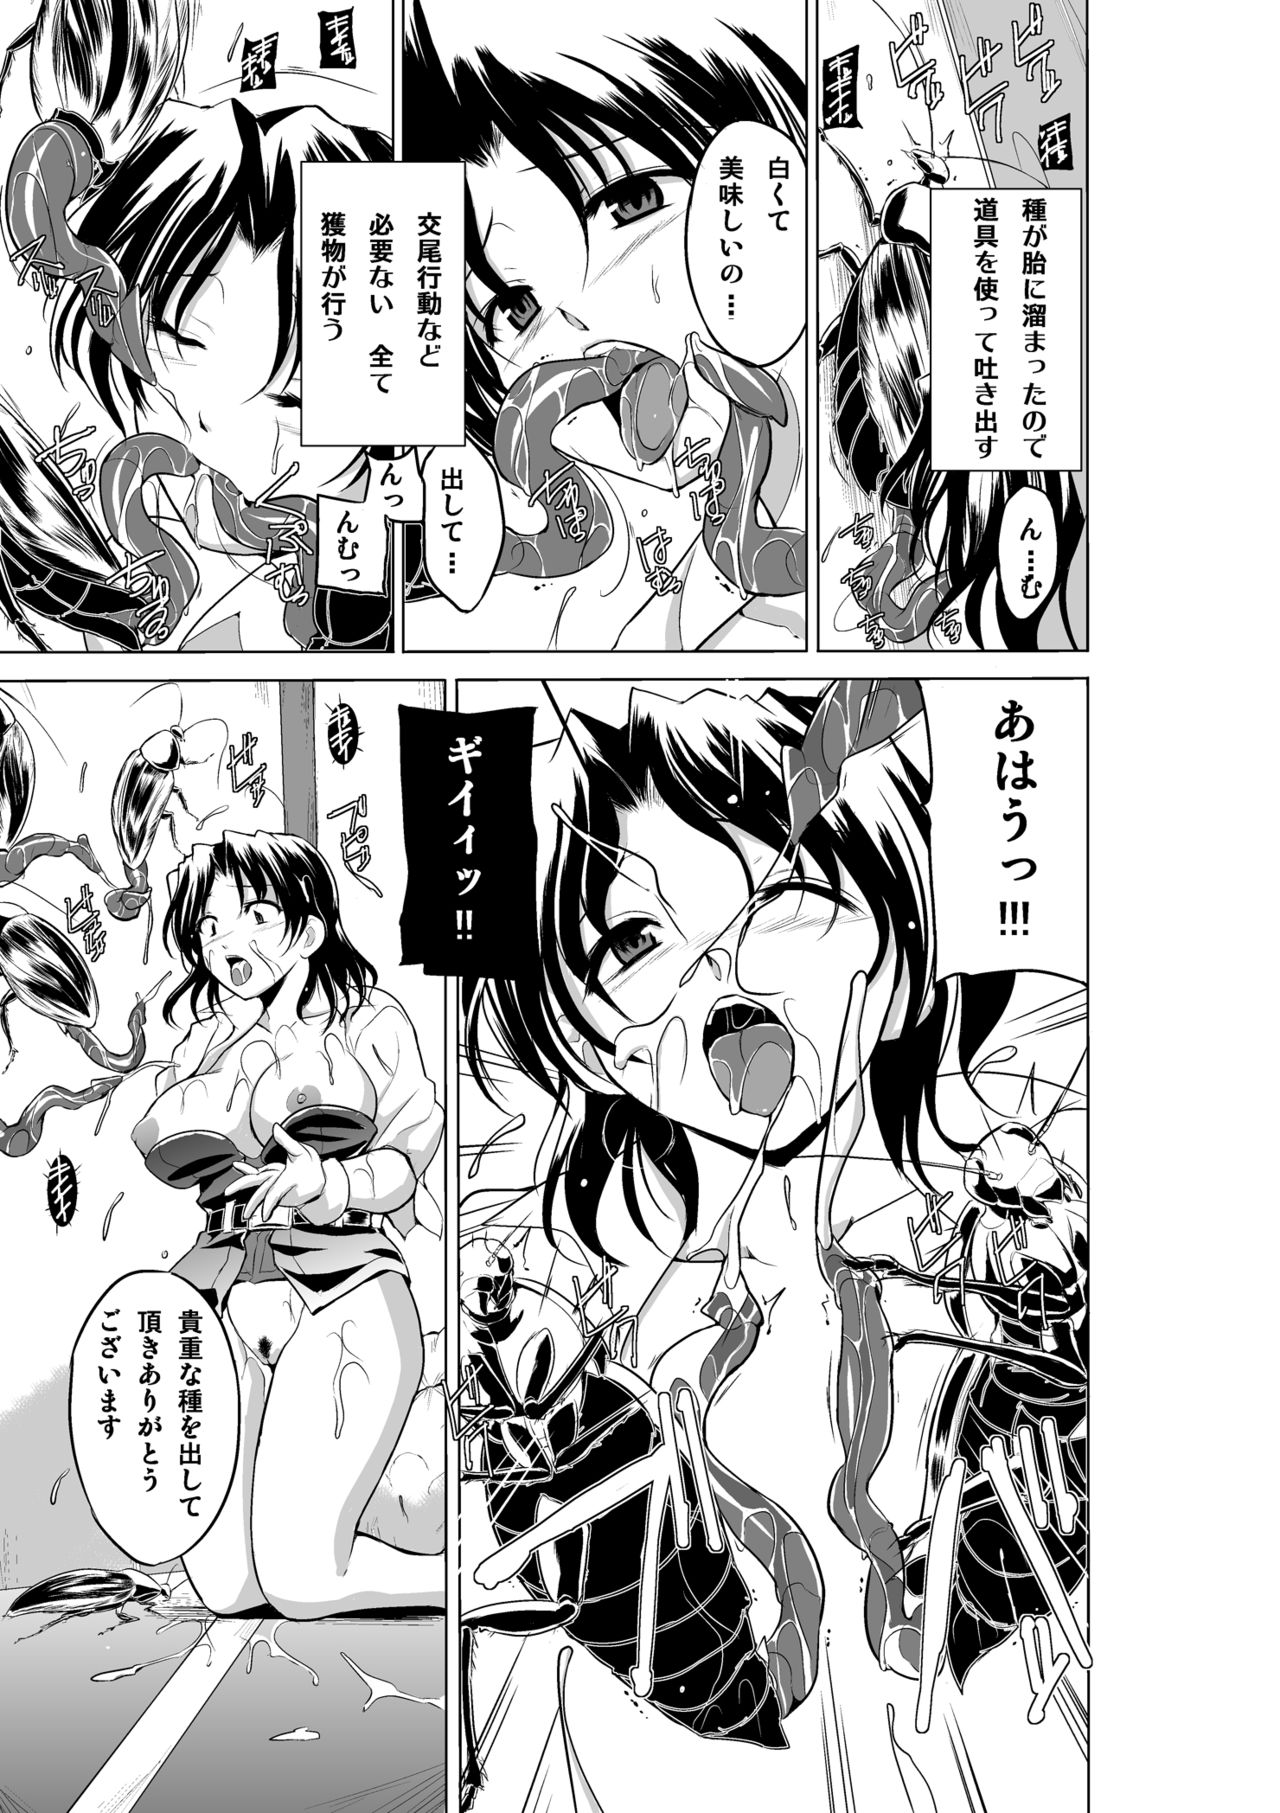 [TibaSanti (Misuke)] Dungeon Travelers - Haruka no Himegoto 2 (ToHeart2 Dungeon Travelers) [Digital] page 5 full